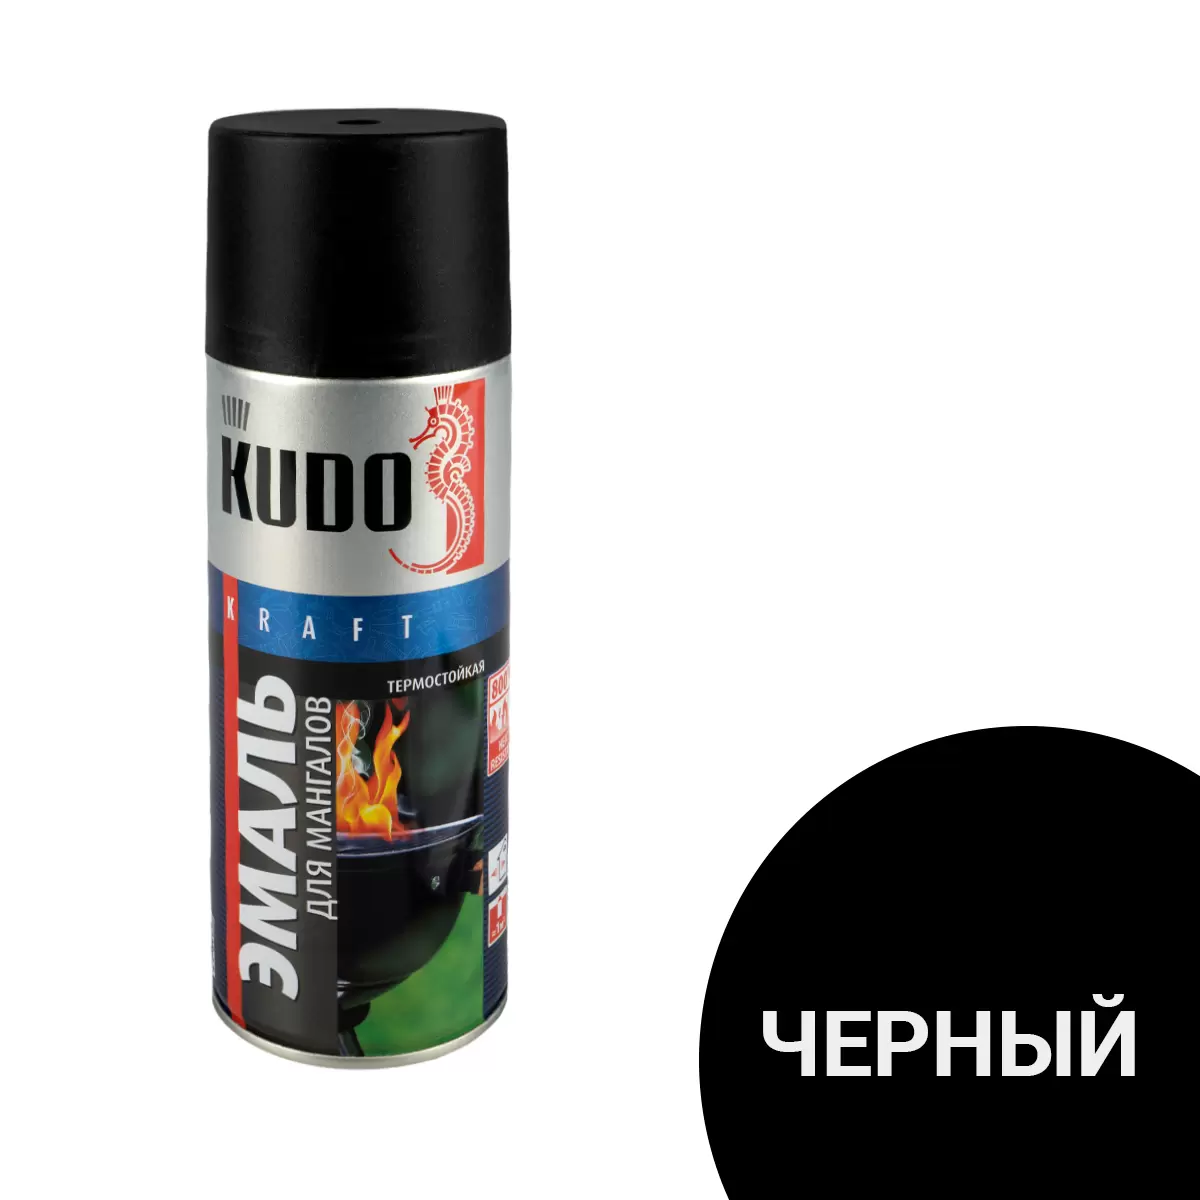 Аэрозольная термостойкая эмаль для мангалов Kudo KU-5122, 520 мл, черная 